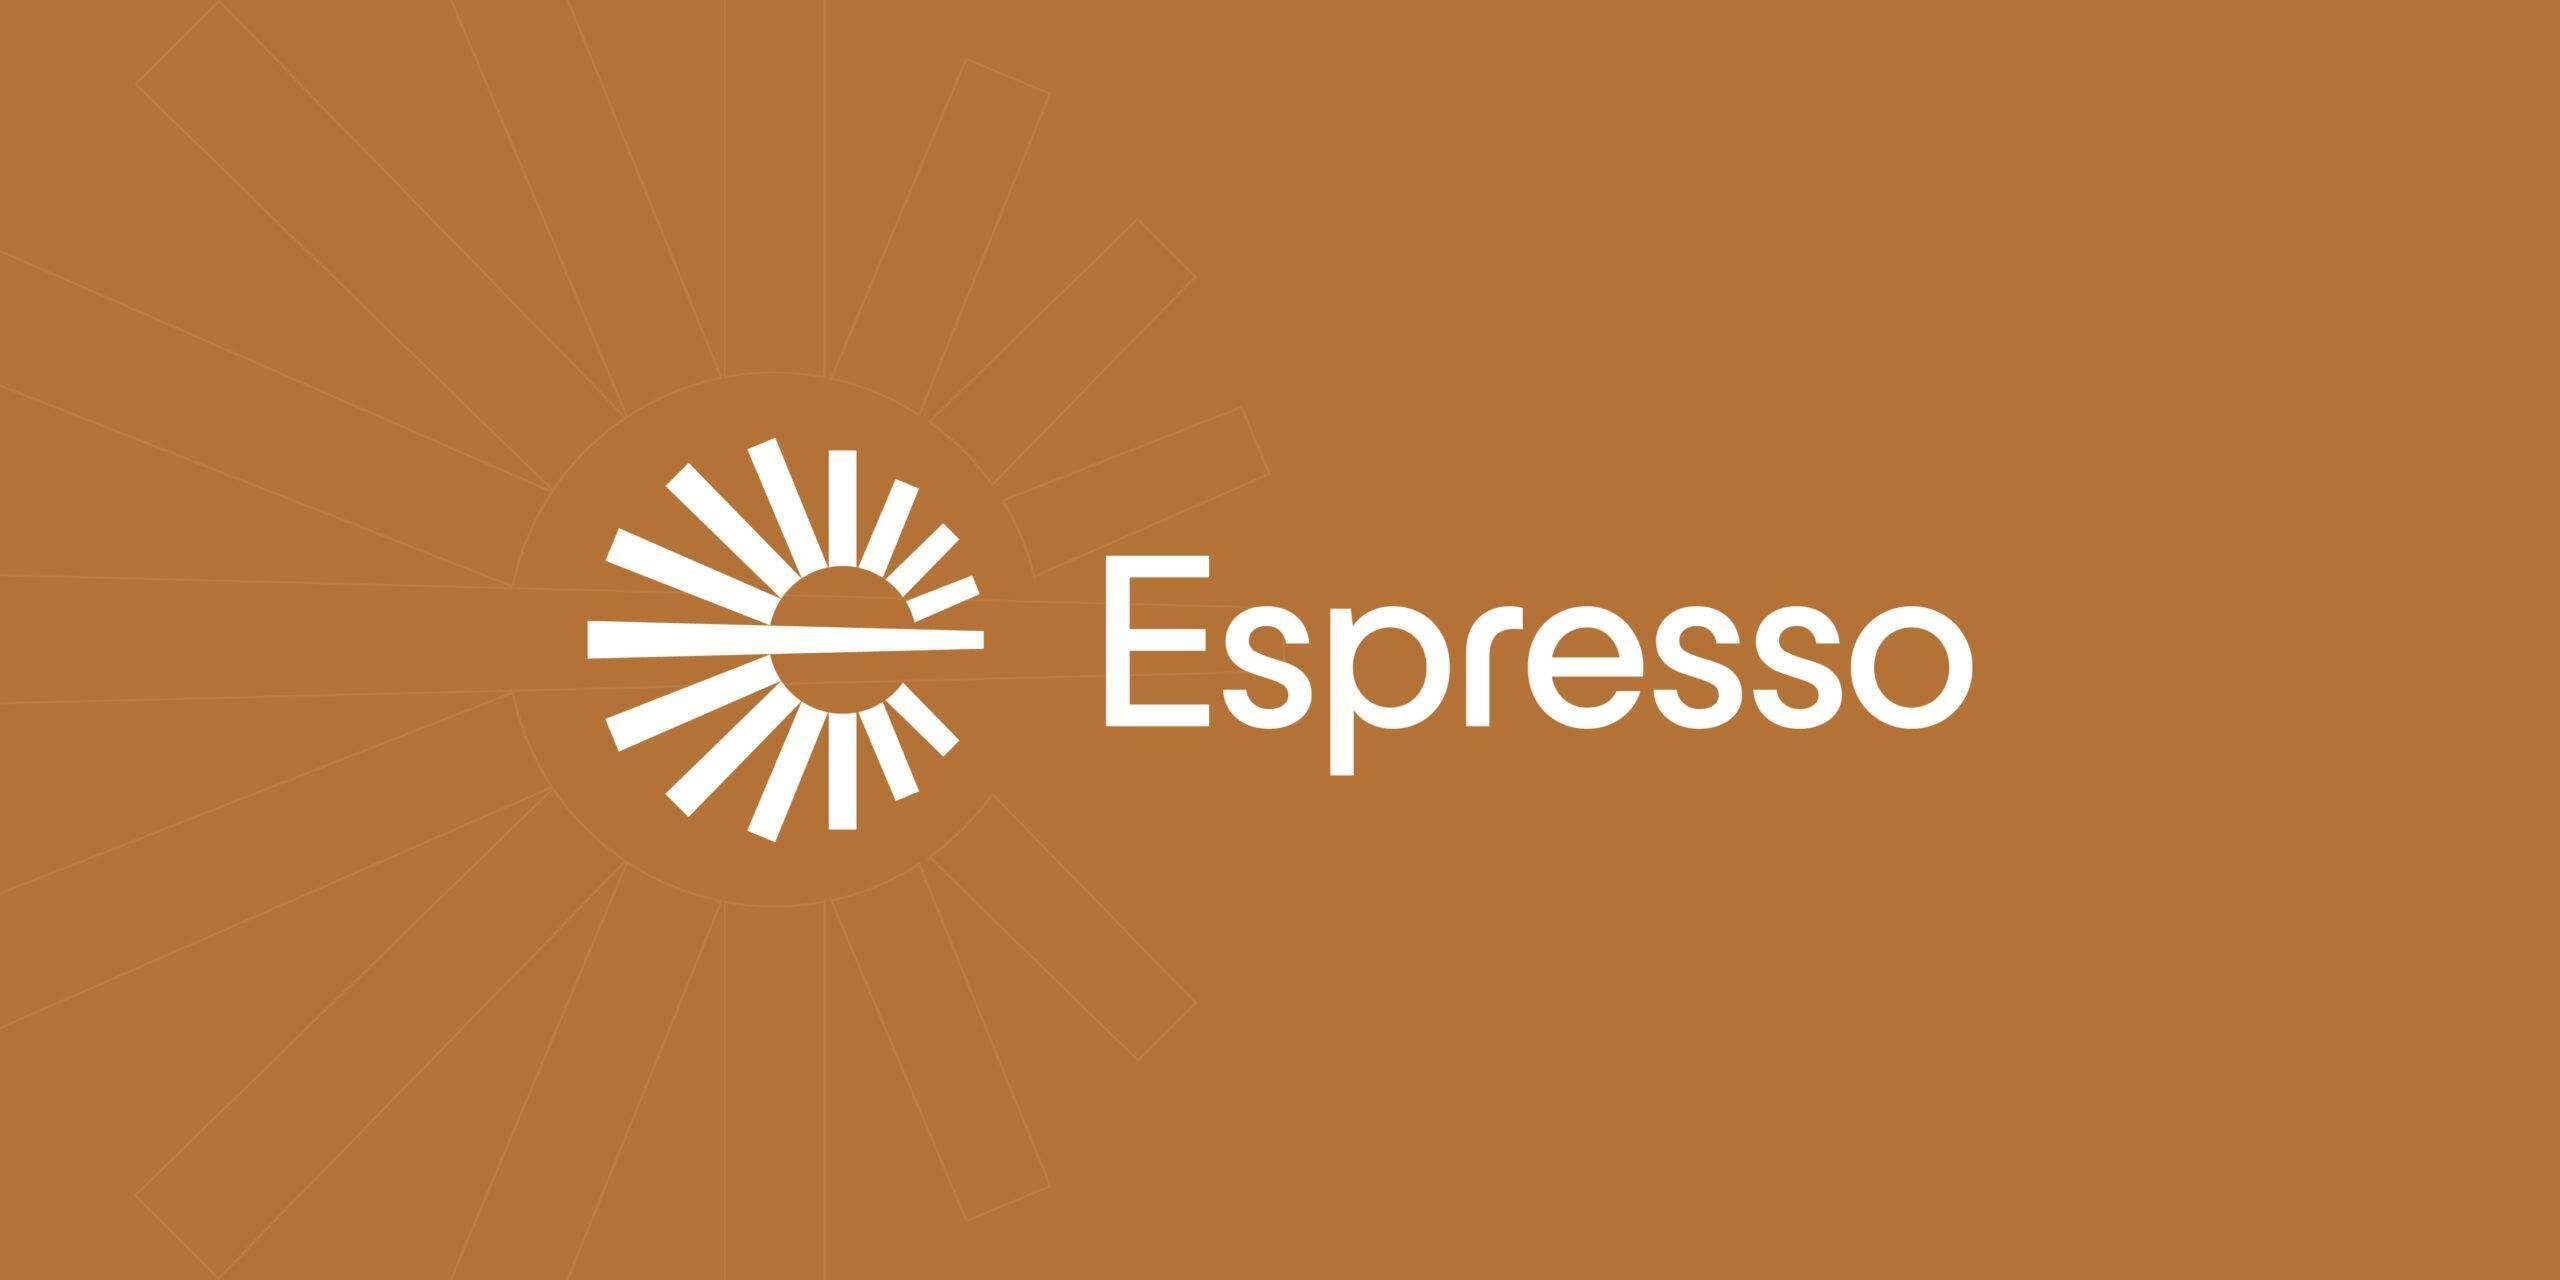 espresso-systems-goi-von-28-trieu-usd-vong-series-b